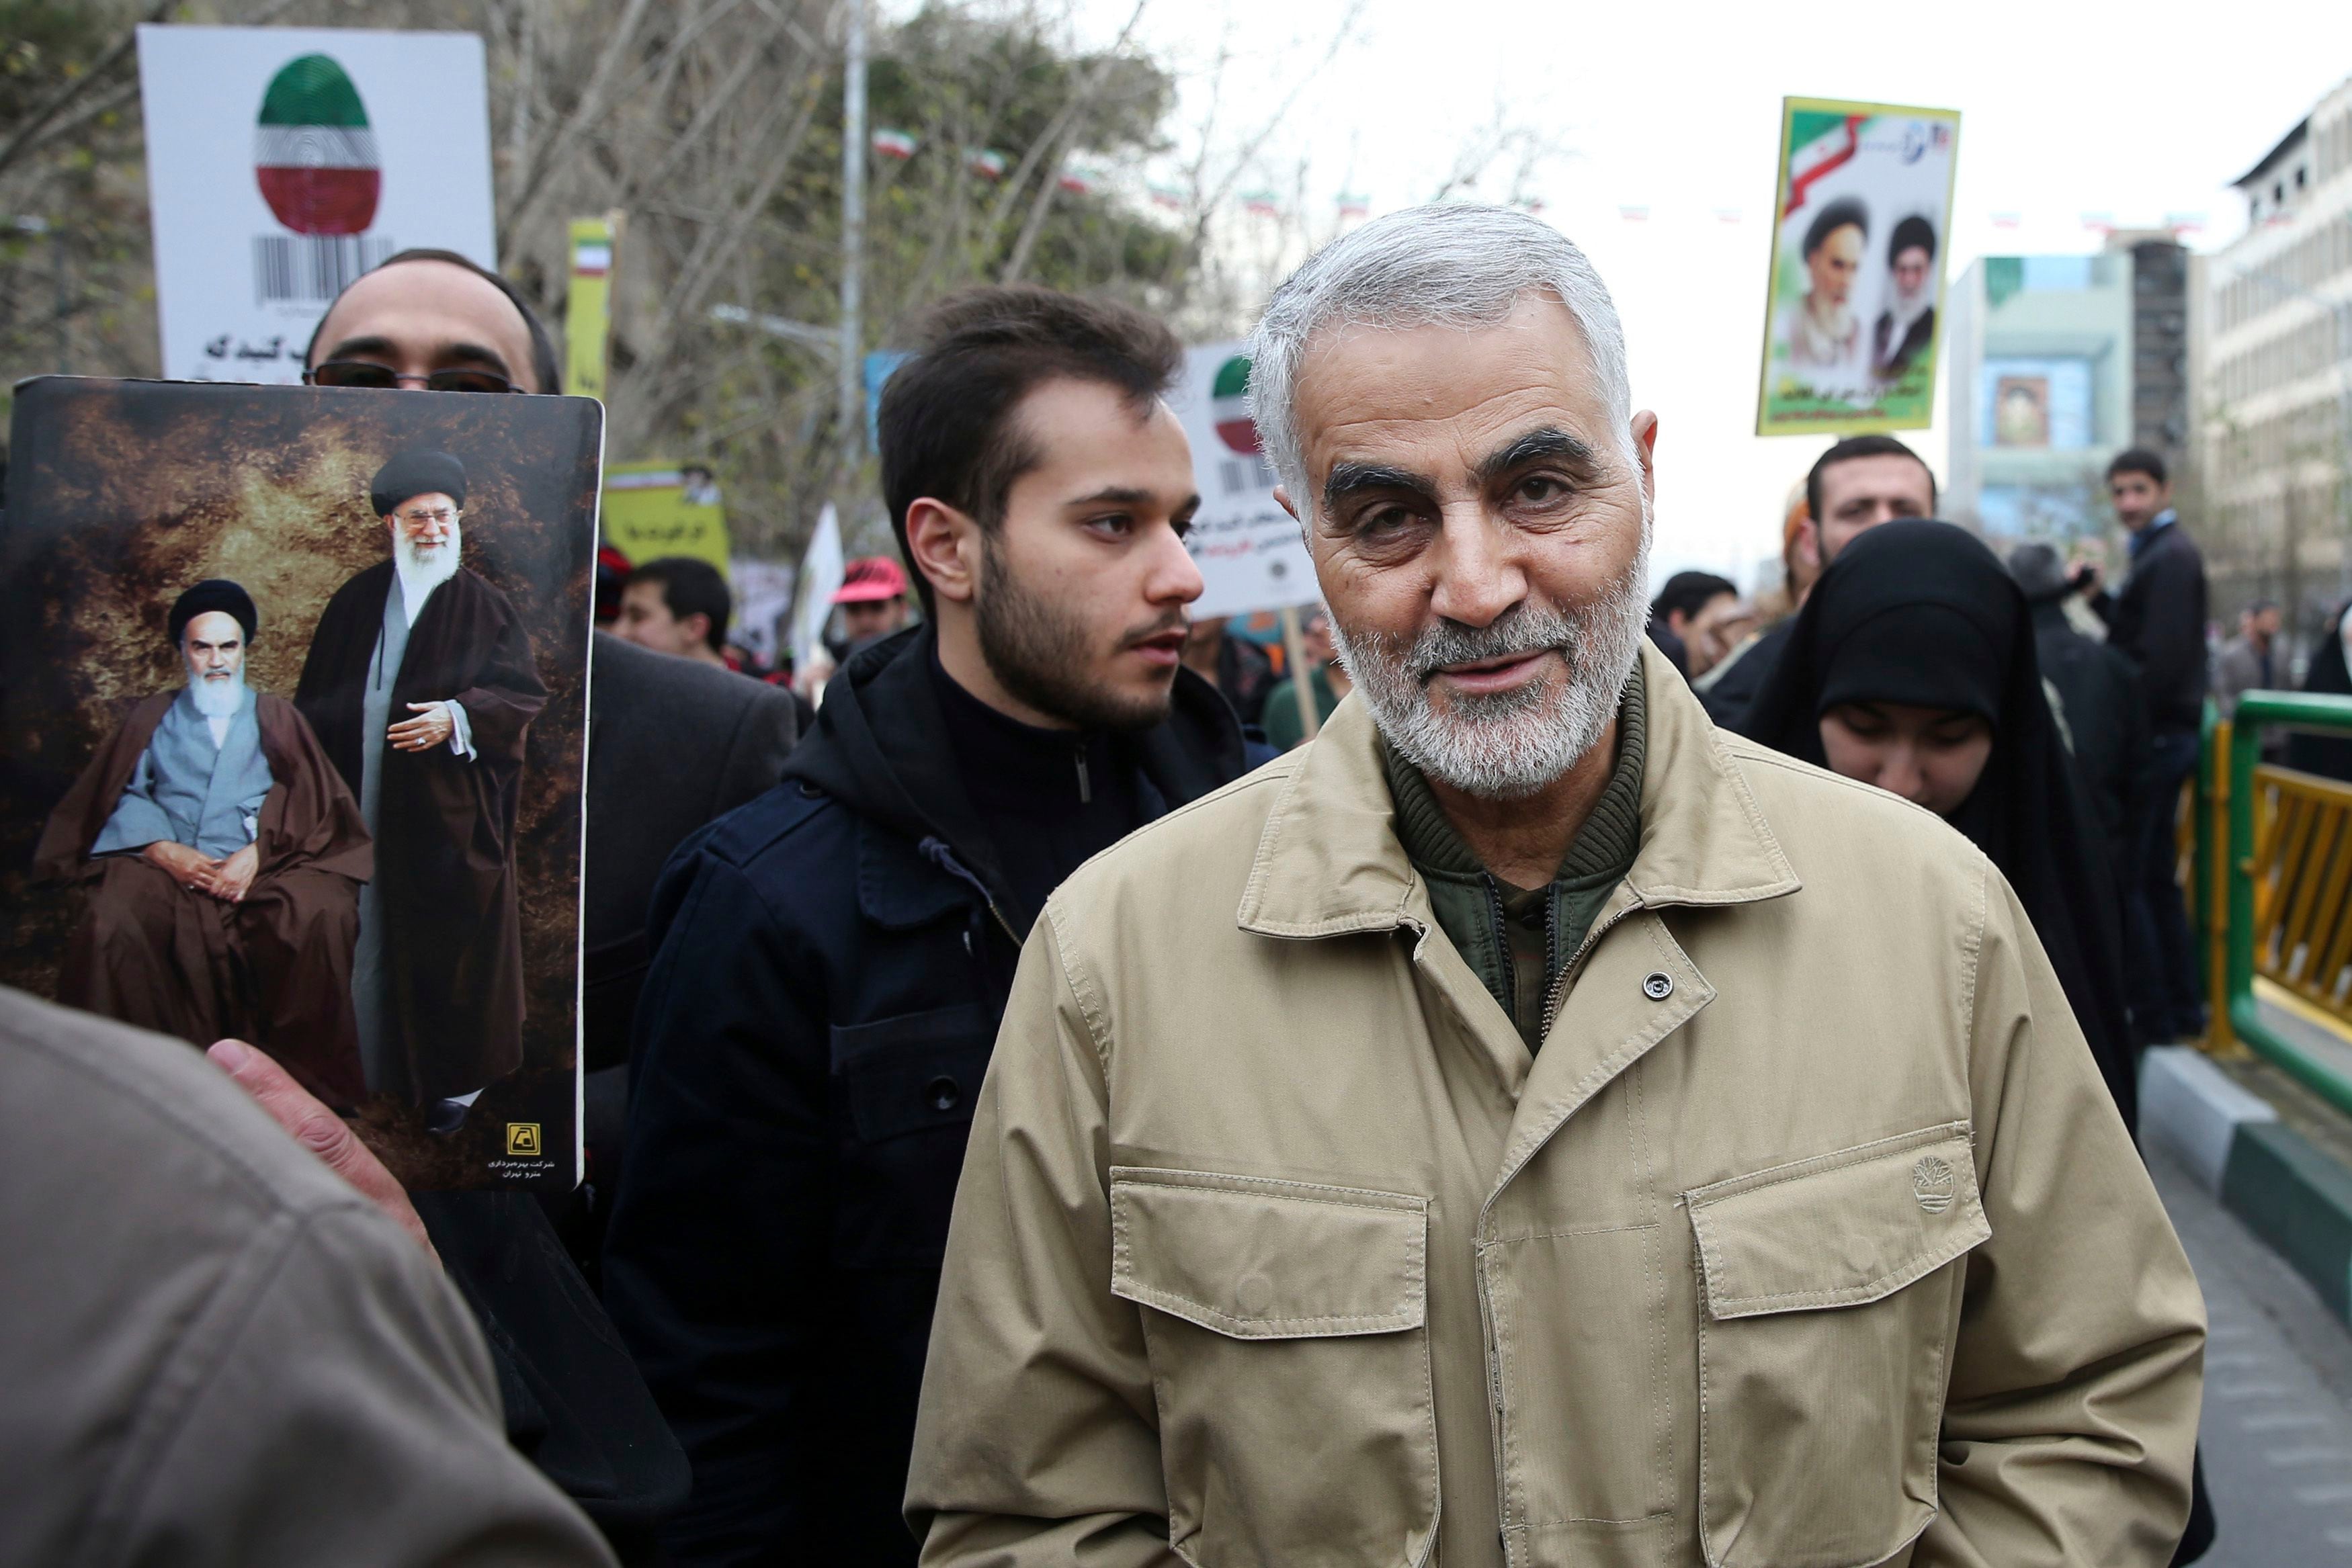 ARCHIVO - En esta fotografía del 11 de febrero de 2016, Qassem Soleimani, comandante de la Fuerza Quds de la Guardia Revolucionaria de Irán, asiste a un evento en Teherán. (AP Foto/Ebrahim Noroozi, Archivo)